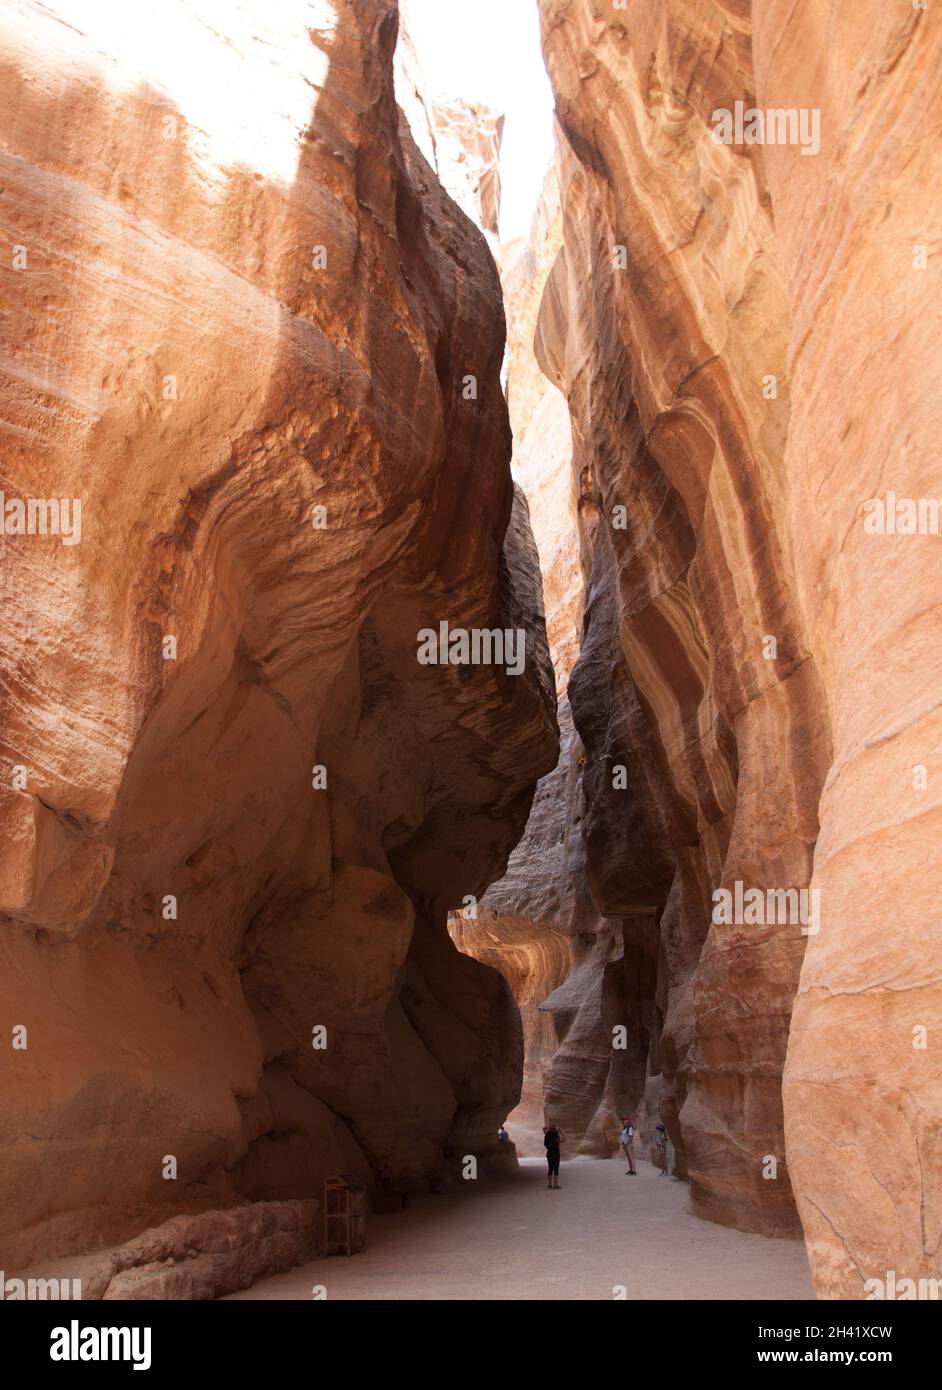 Le Siq, Petra, la Jordanie, le Moyen-Orient. Canyon, formation rocheuse permettant le passage vers la « ville cachée » de Petra. Banque D'Images